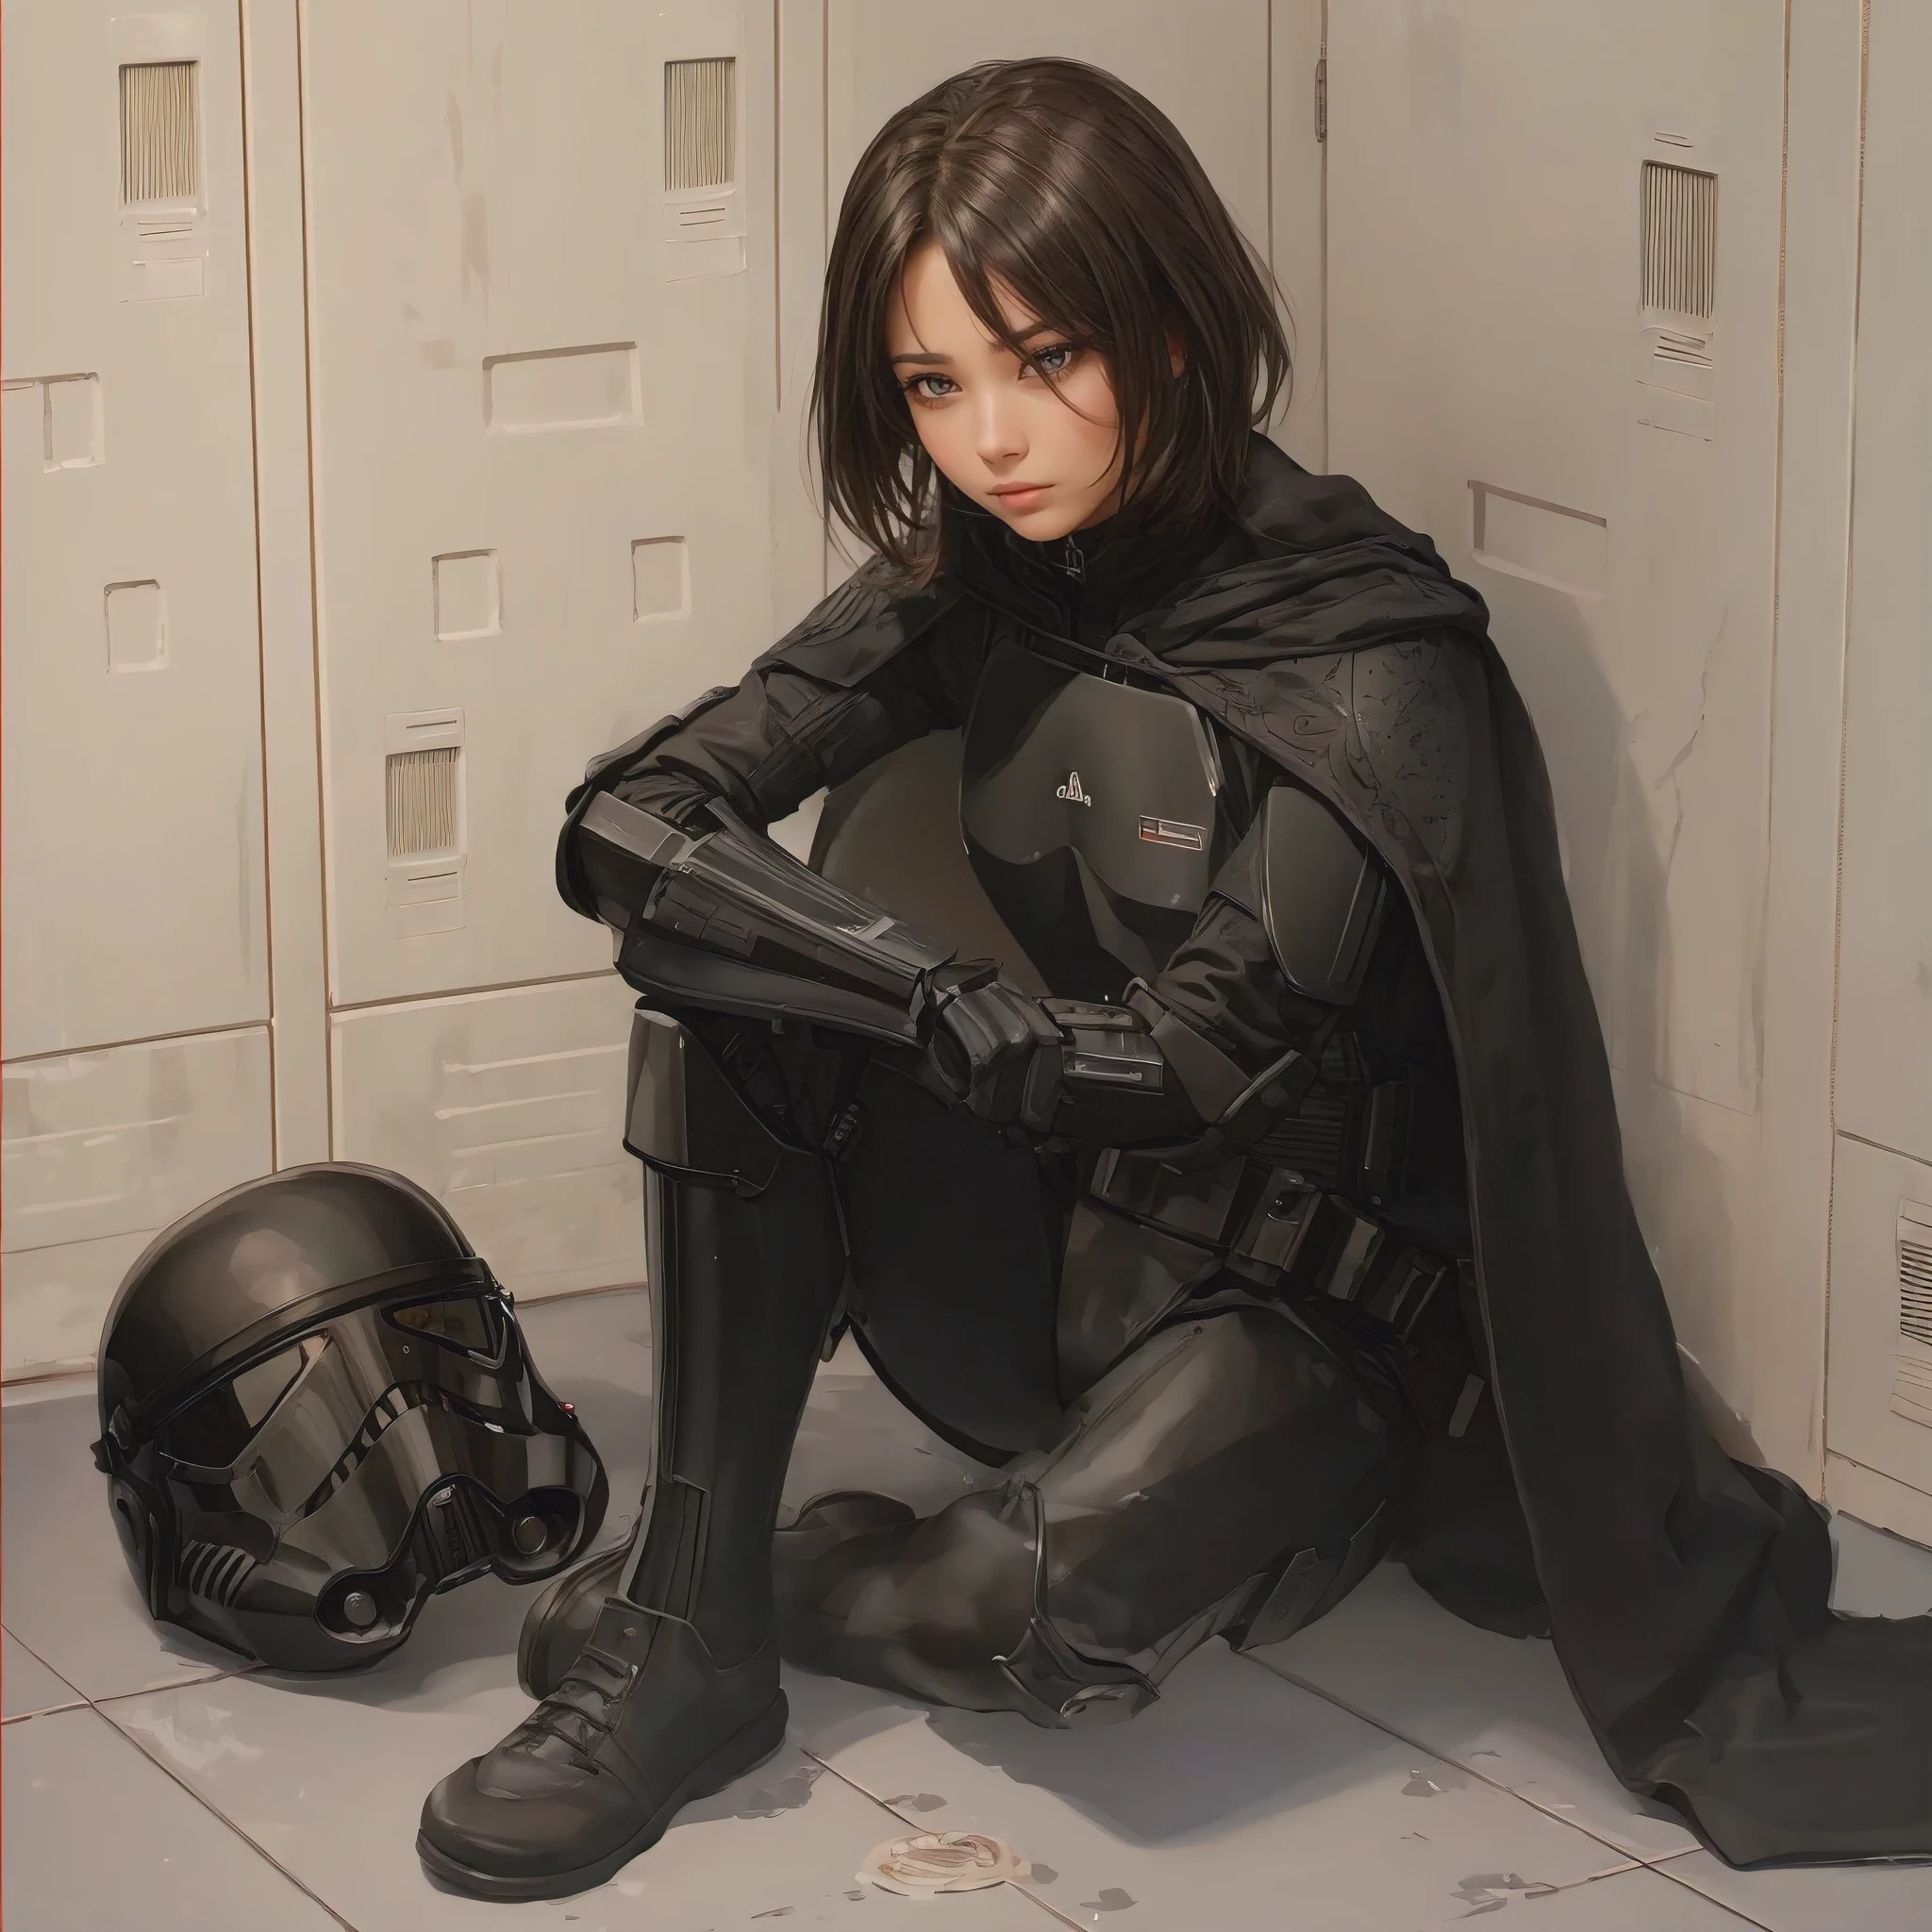 (傑作, ビート品質, 超詳細:1.3), 女性ストームトルーパー, 武器庫のロッカールームに座っている, 黒いパイロットアーマー, 床に置かれた黒いヘルメット, 全身, シンプルなキャラクターデザイン